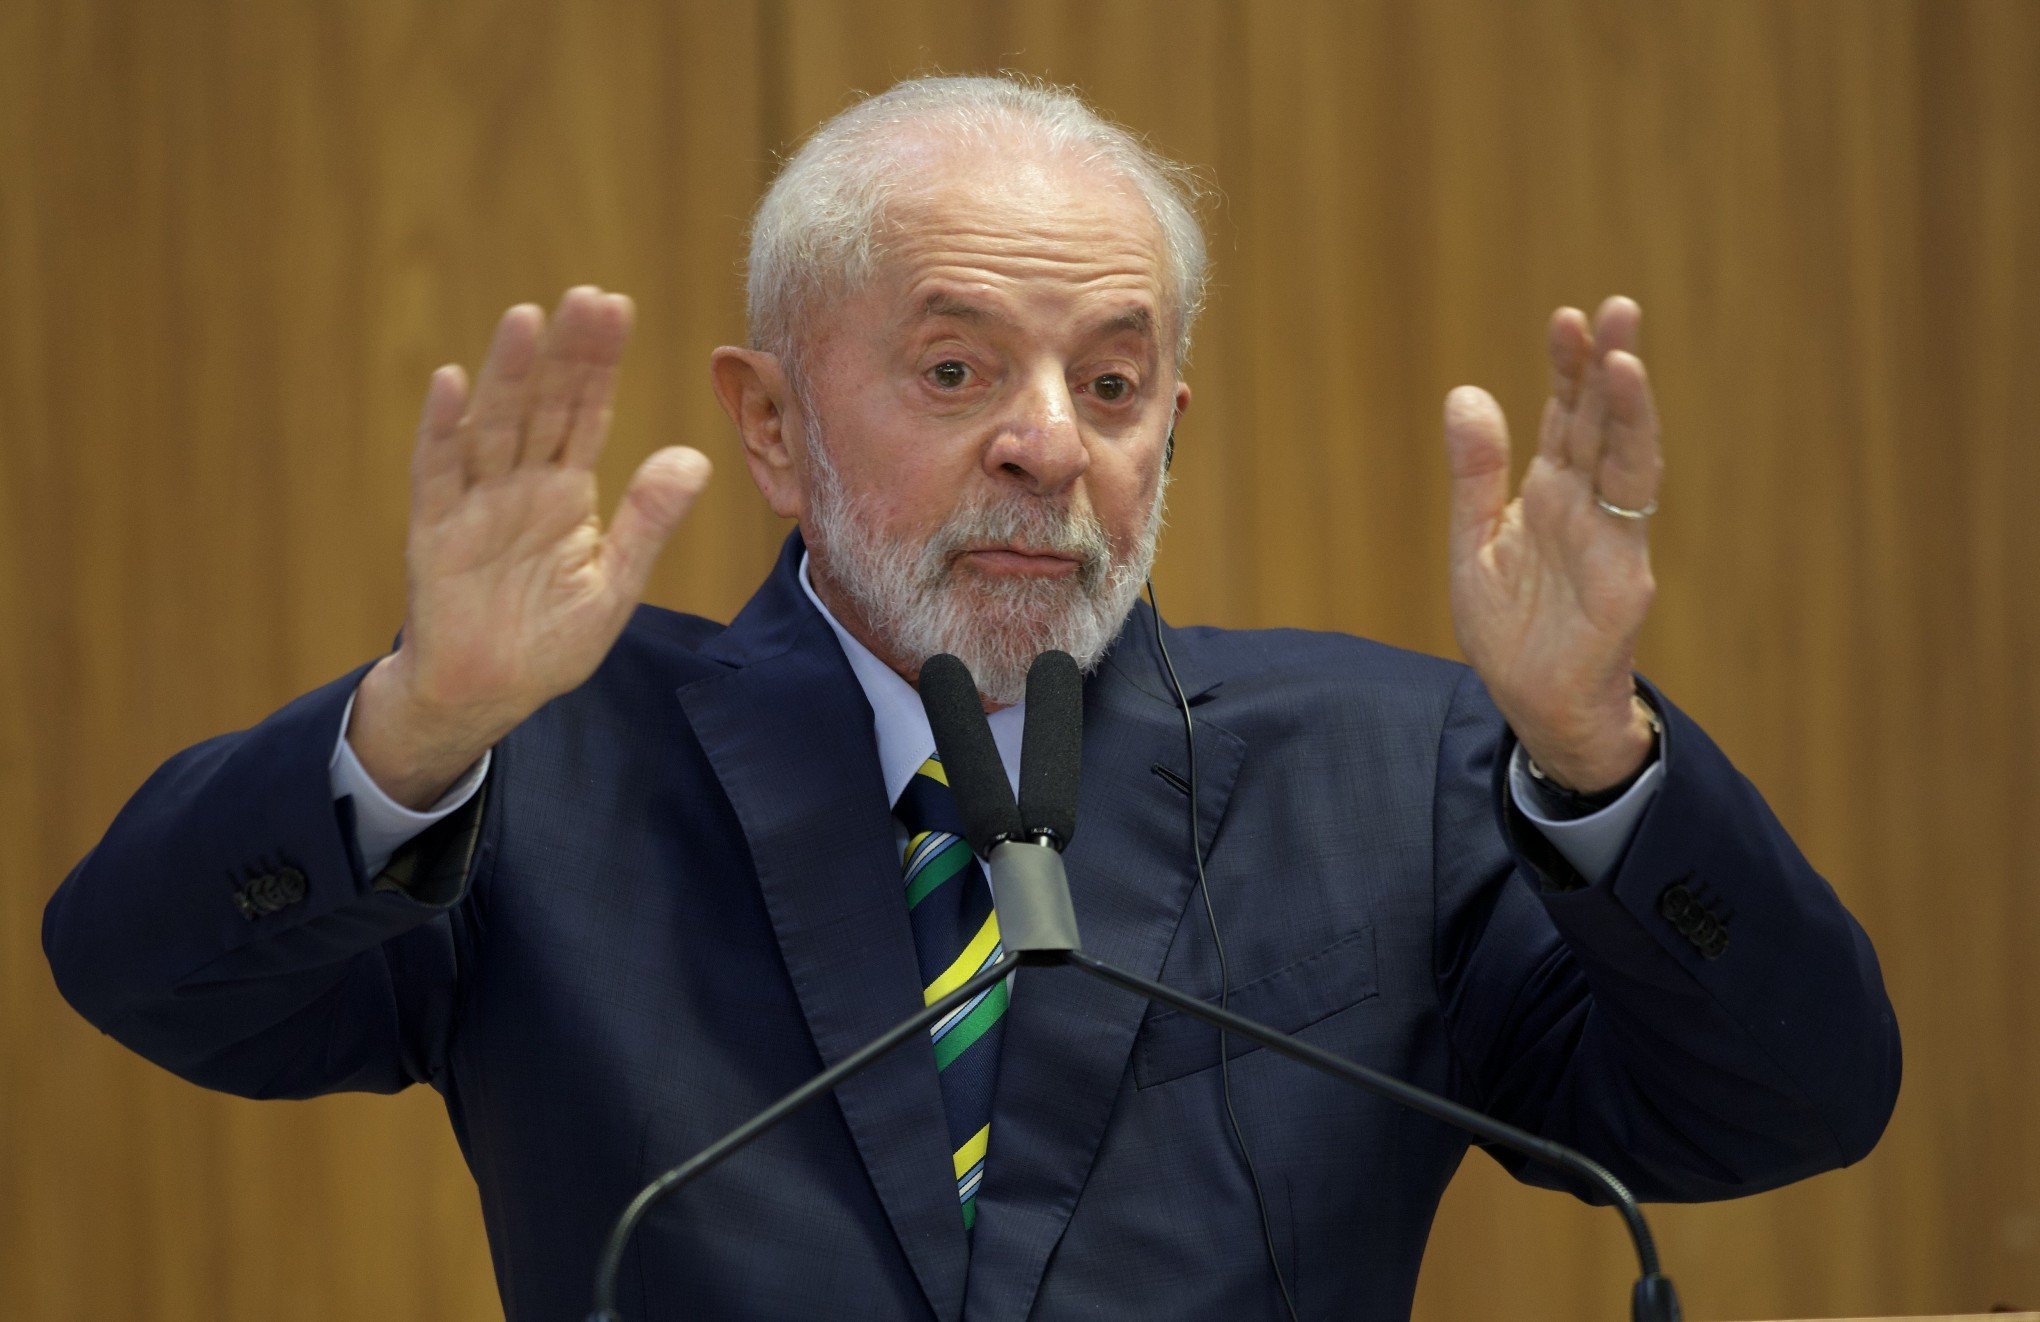 Embaixador da Venezuela no Brasil pede reunião com governo após críticas de Lula a Maduro